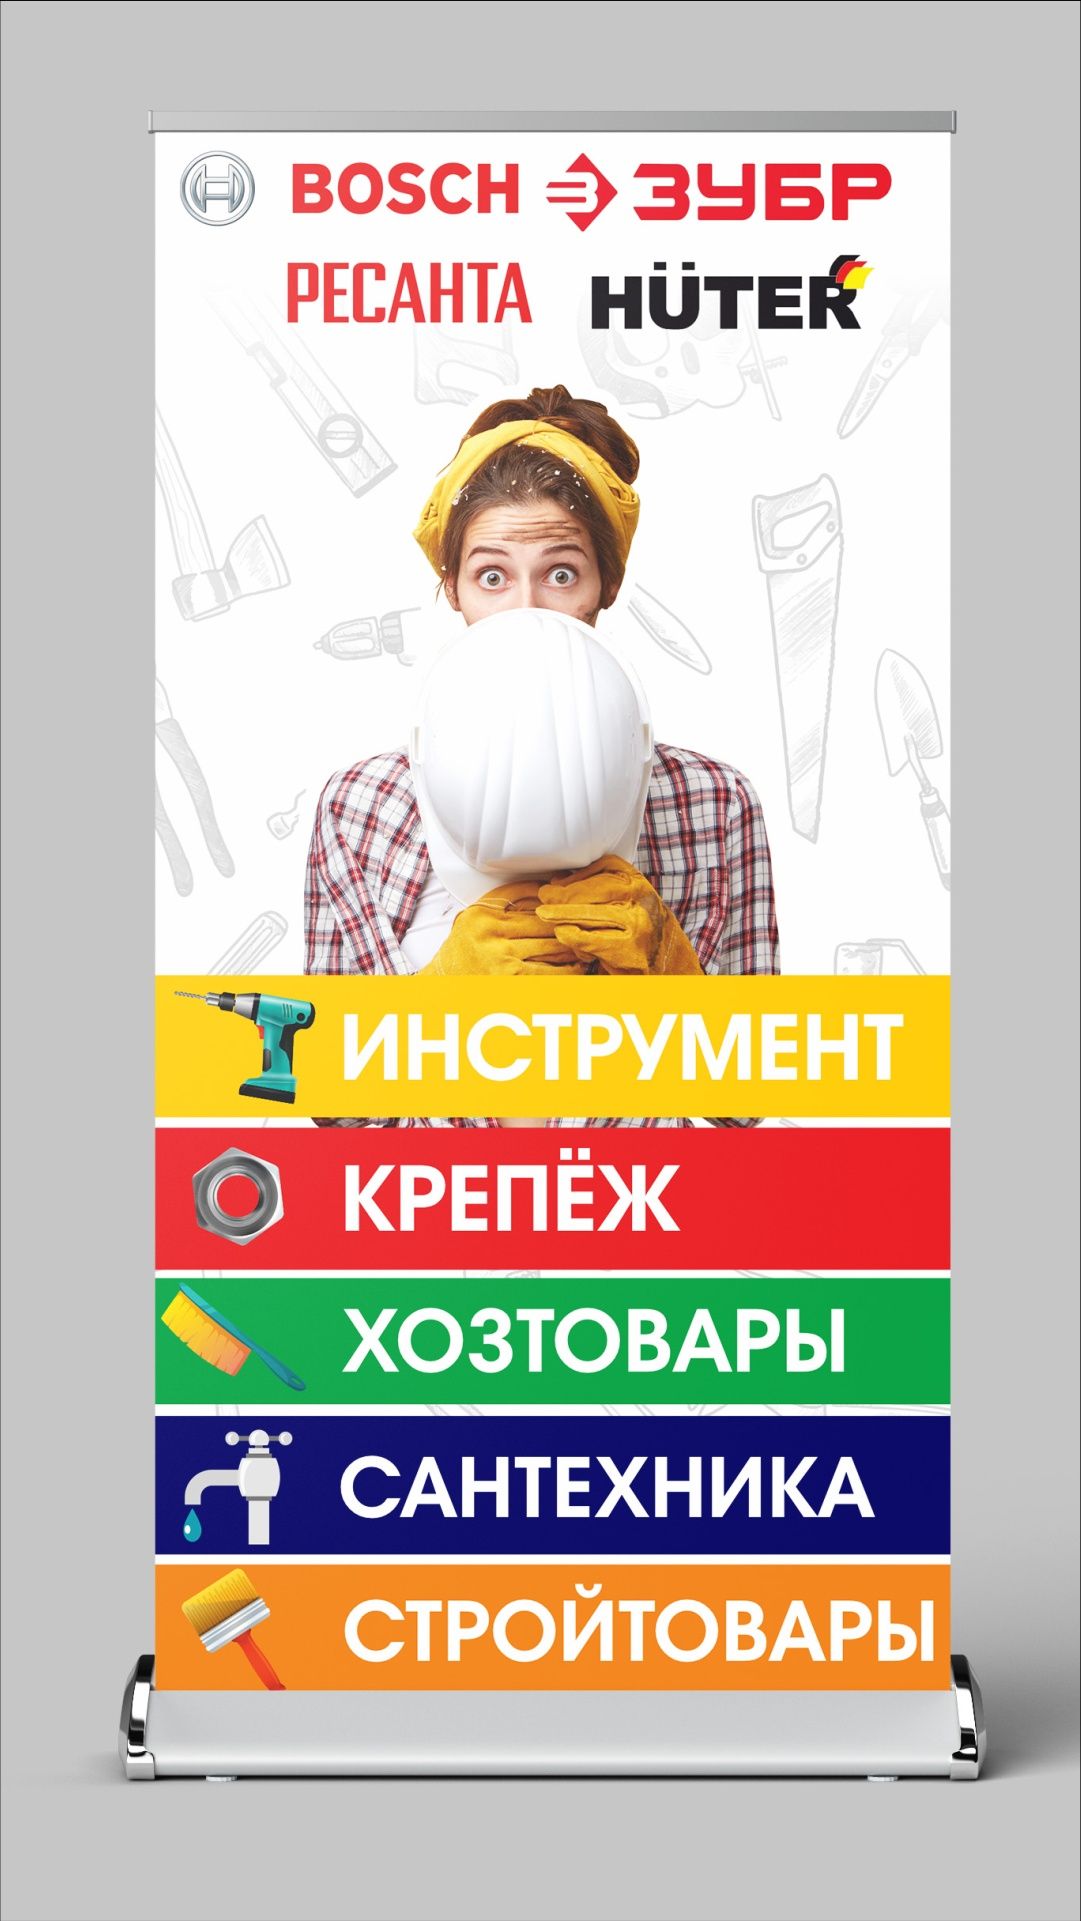 Услуги графического дизайнера. логотипы. баннера .визитки